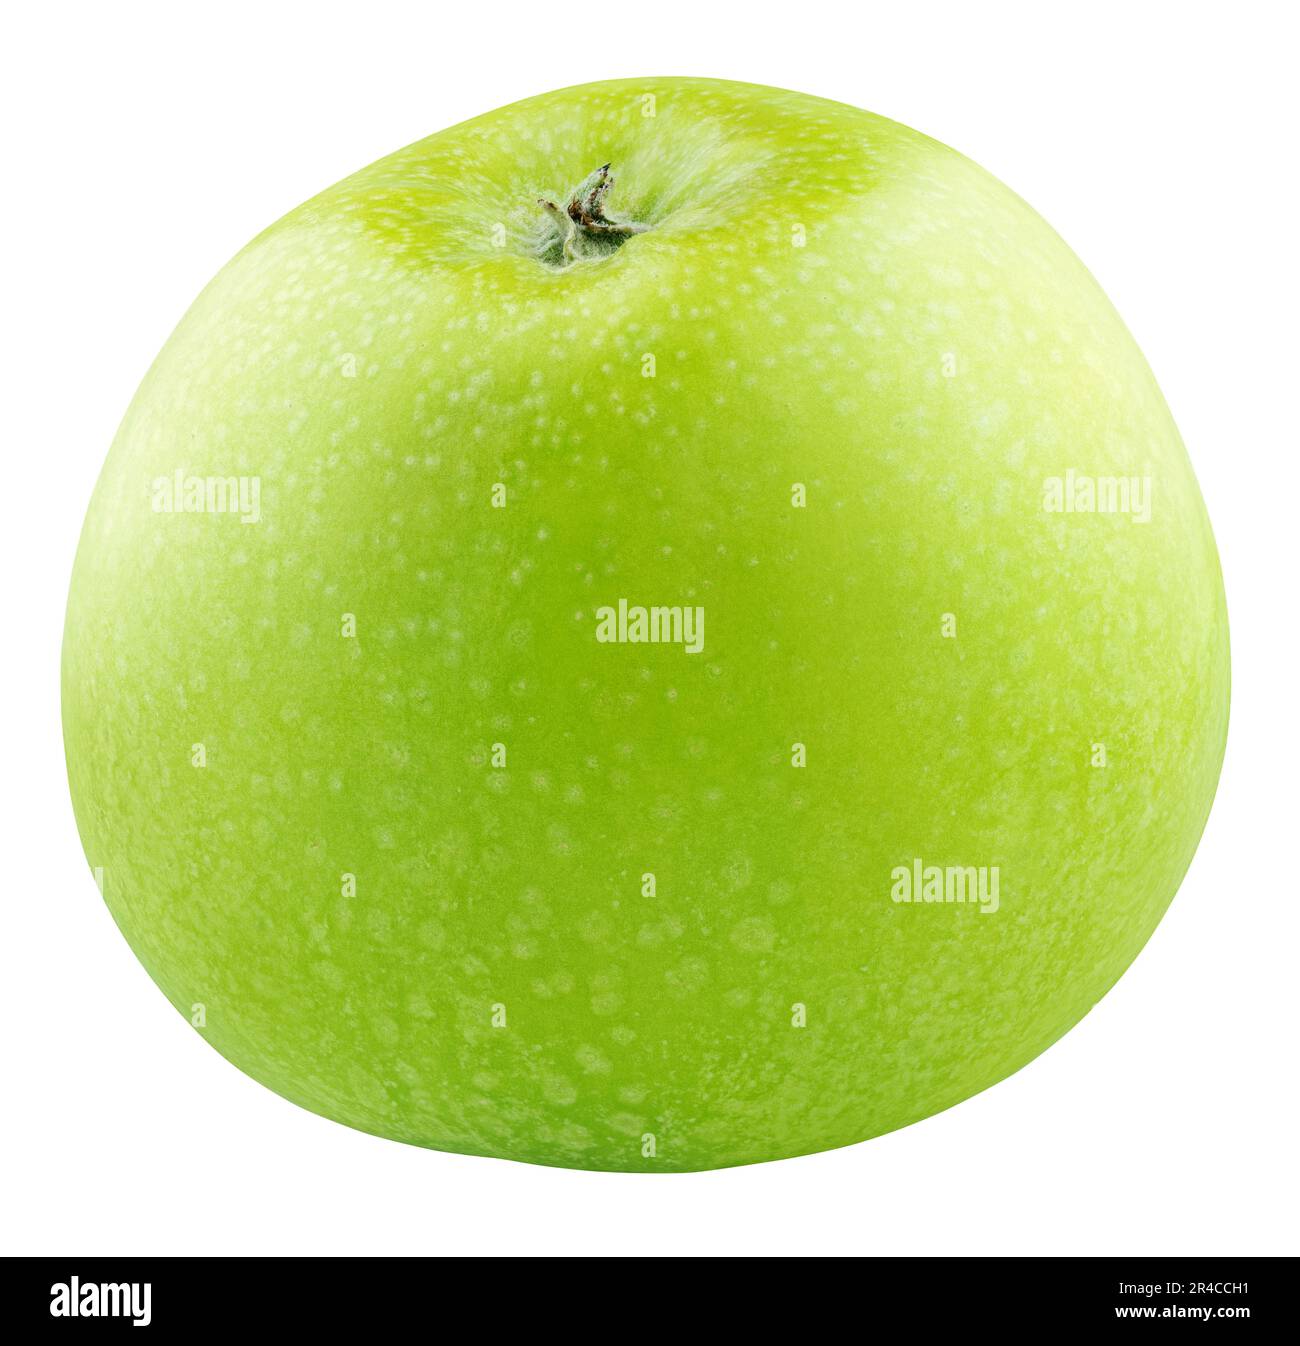 Singolo frutto verde di mela isolato su sfondo bianco. Mela Granny smith con tracciato di ritaglio. Profondità di campo completa Foto Stock